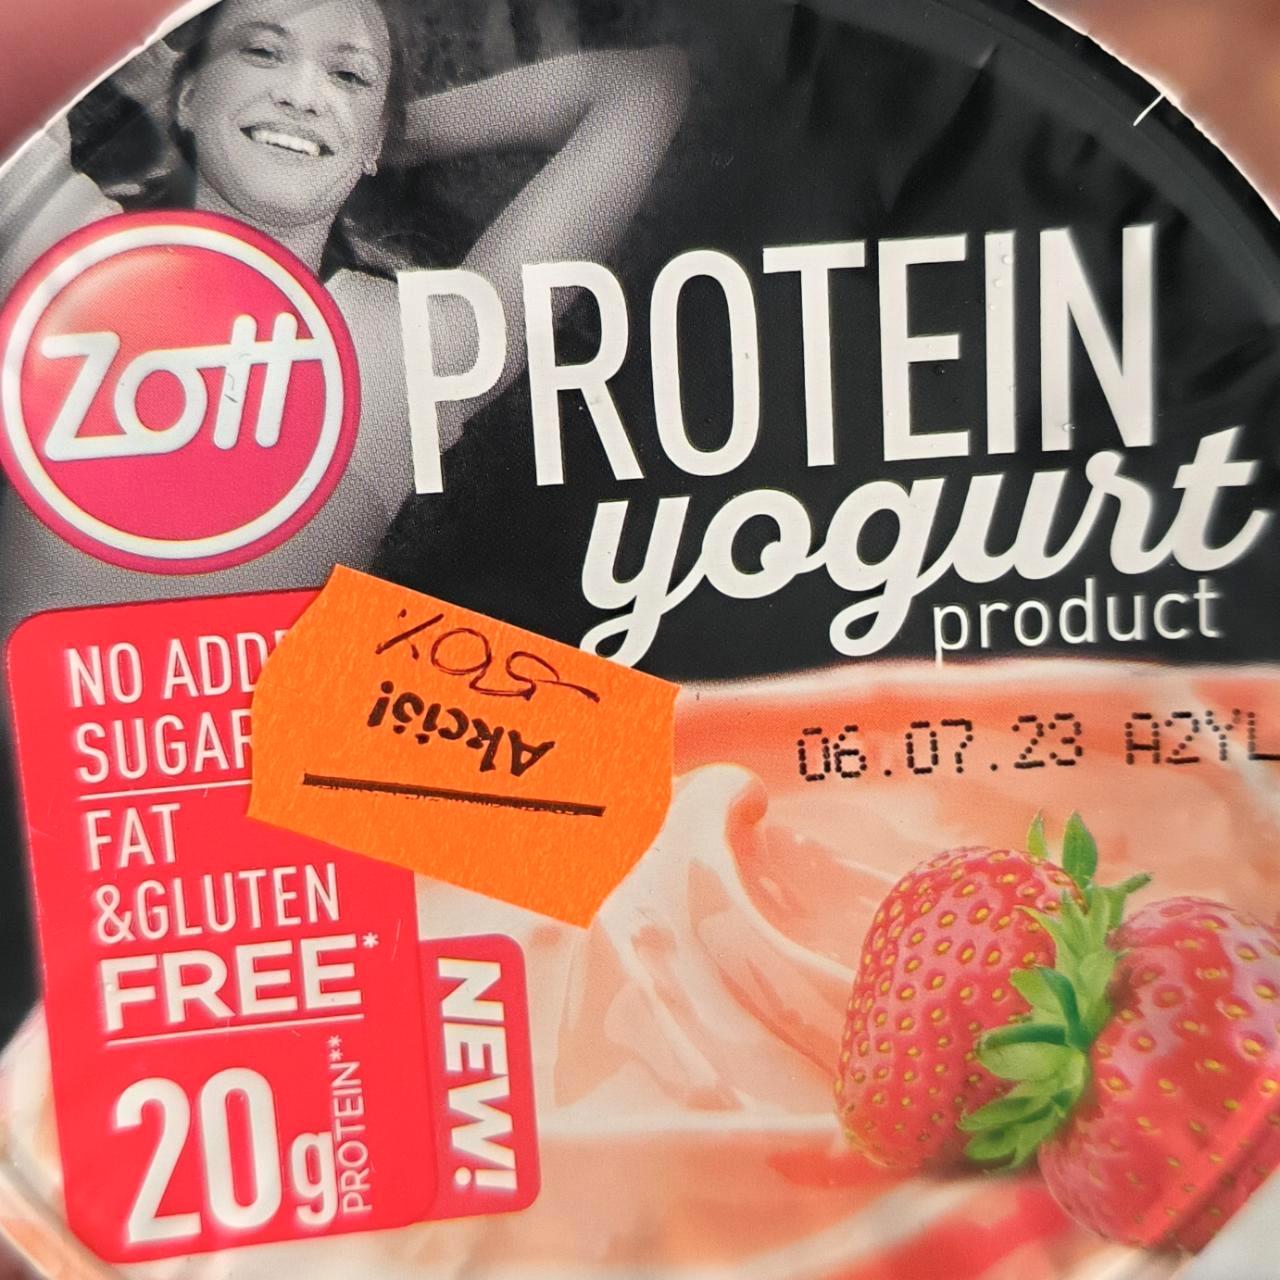 Képek - Protein joghurt Epres Zott